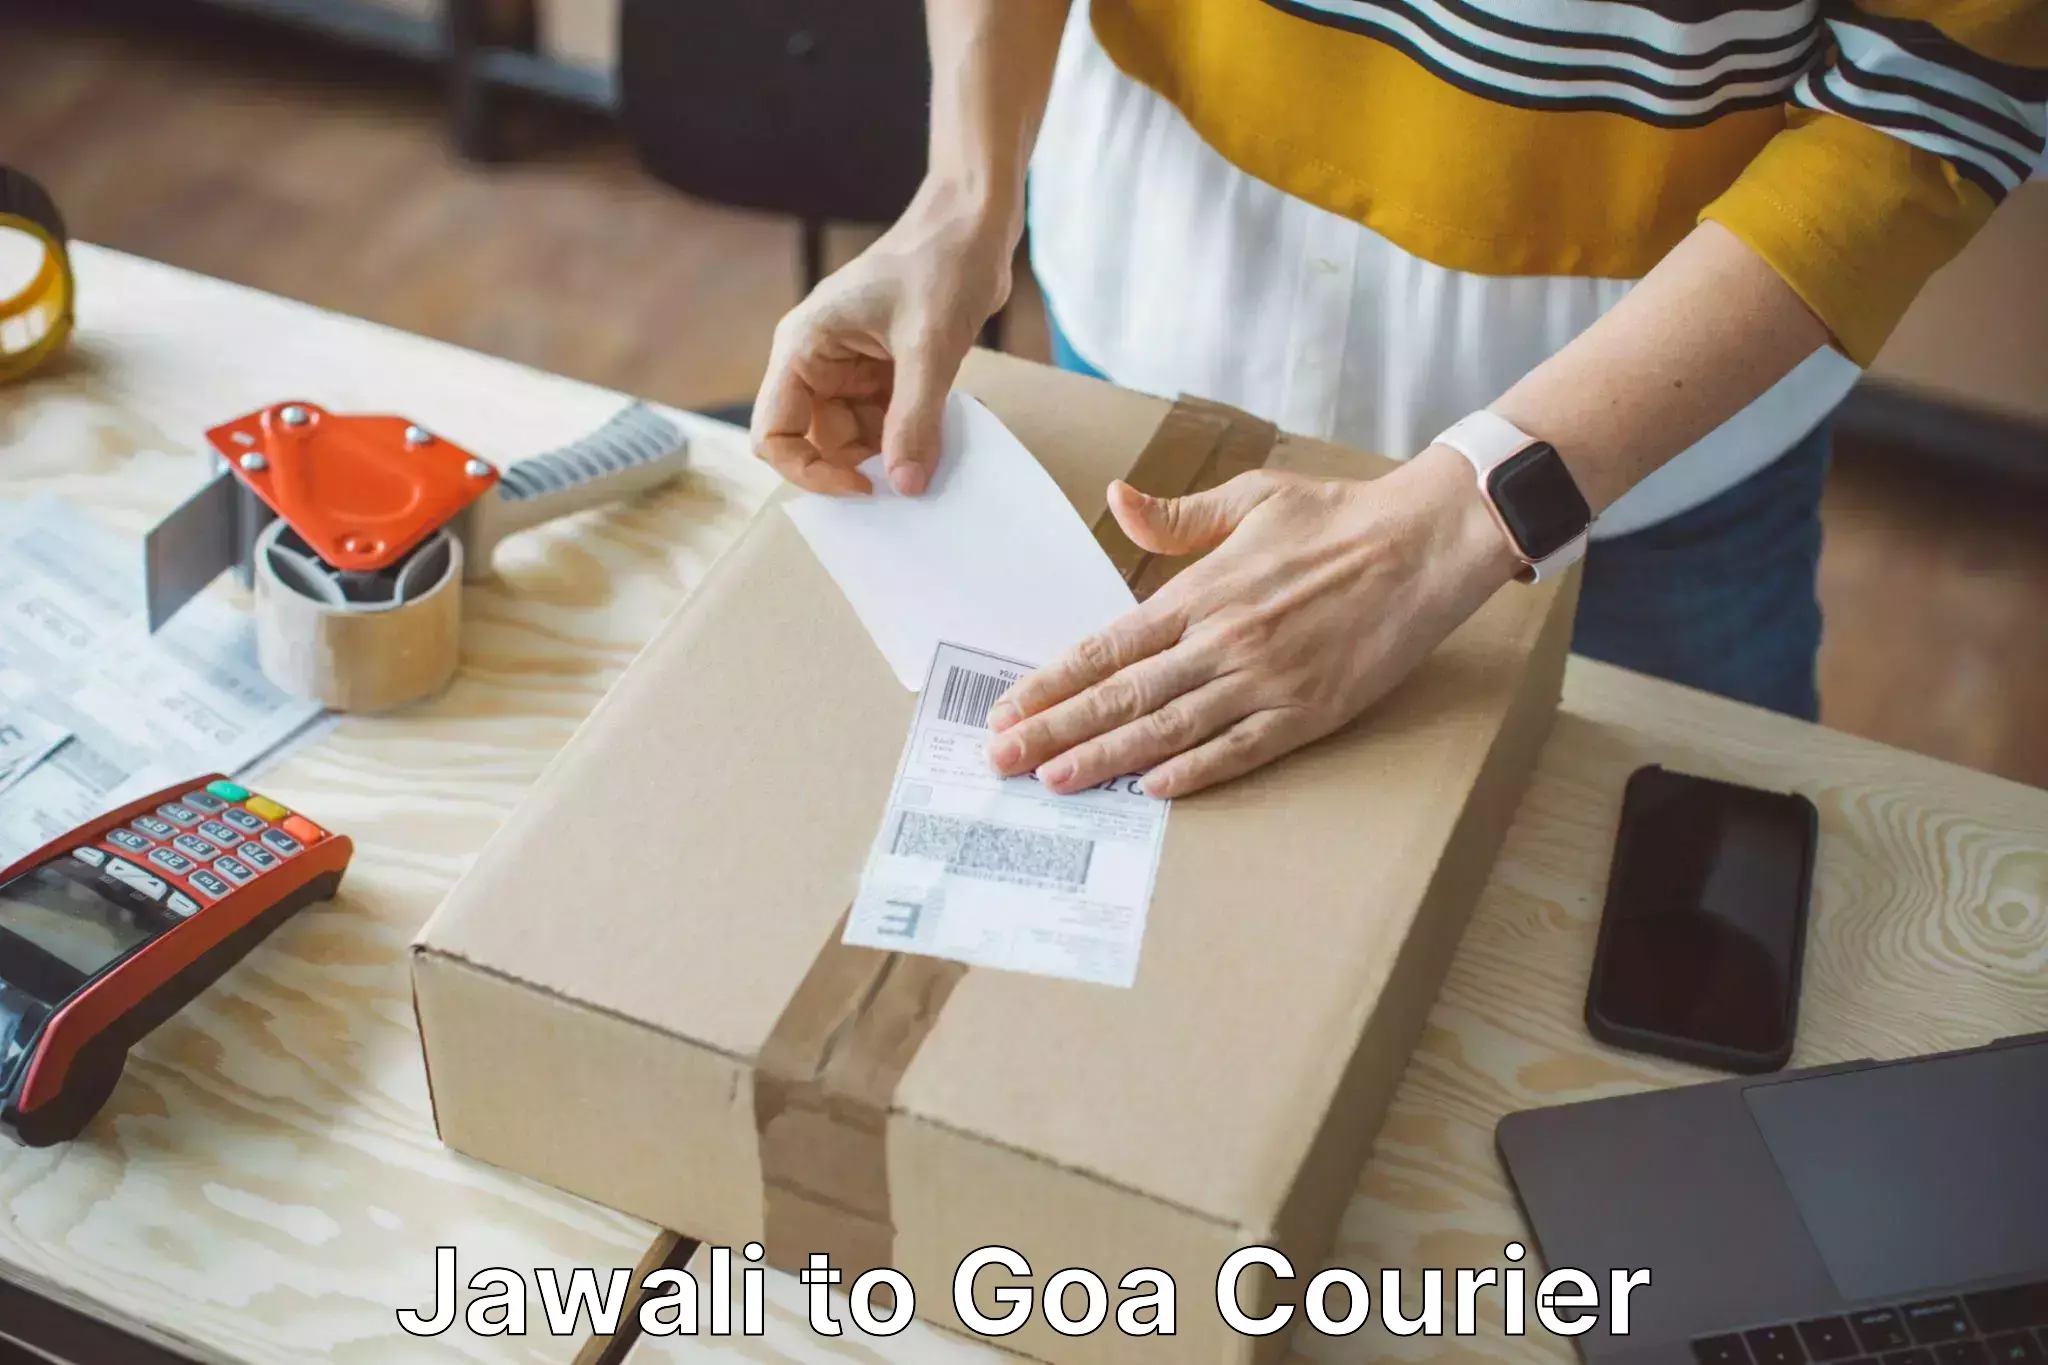 Luggage shipment specialists Jawali to Goa